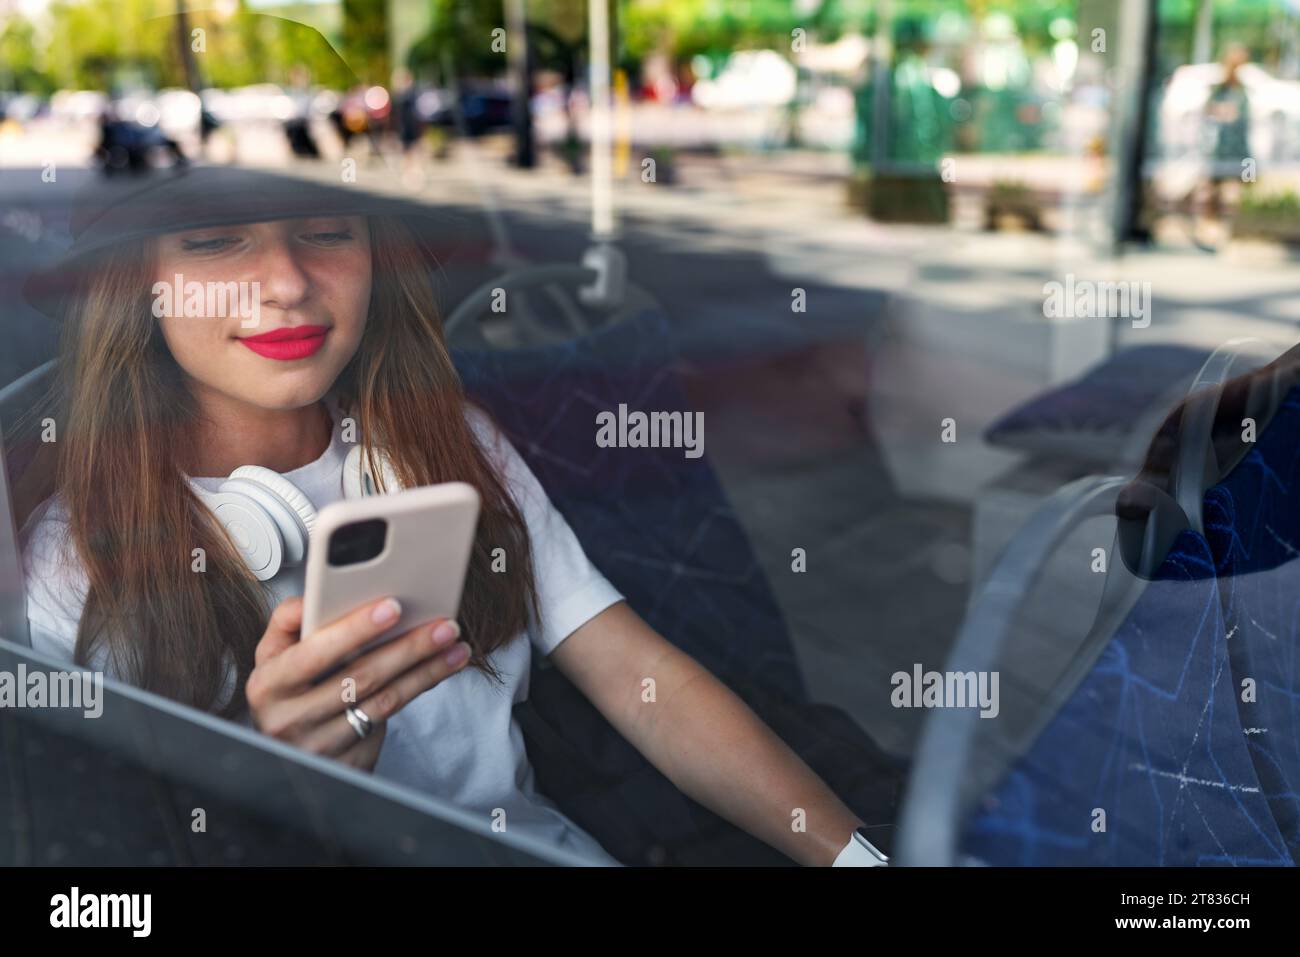 Foto durch das Glas des Busfensters, Passagierin, die ihr Smartphone benutzt, während sie im Shuttlebus sitzt. Stockfoto